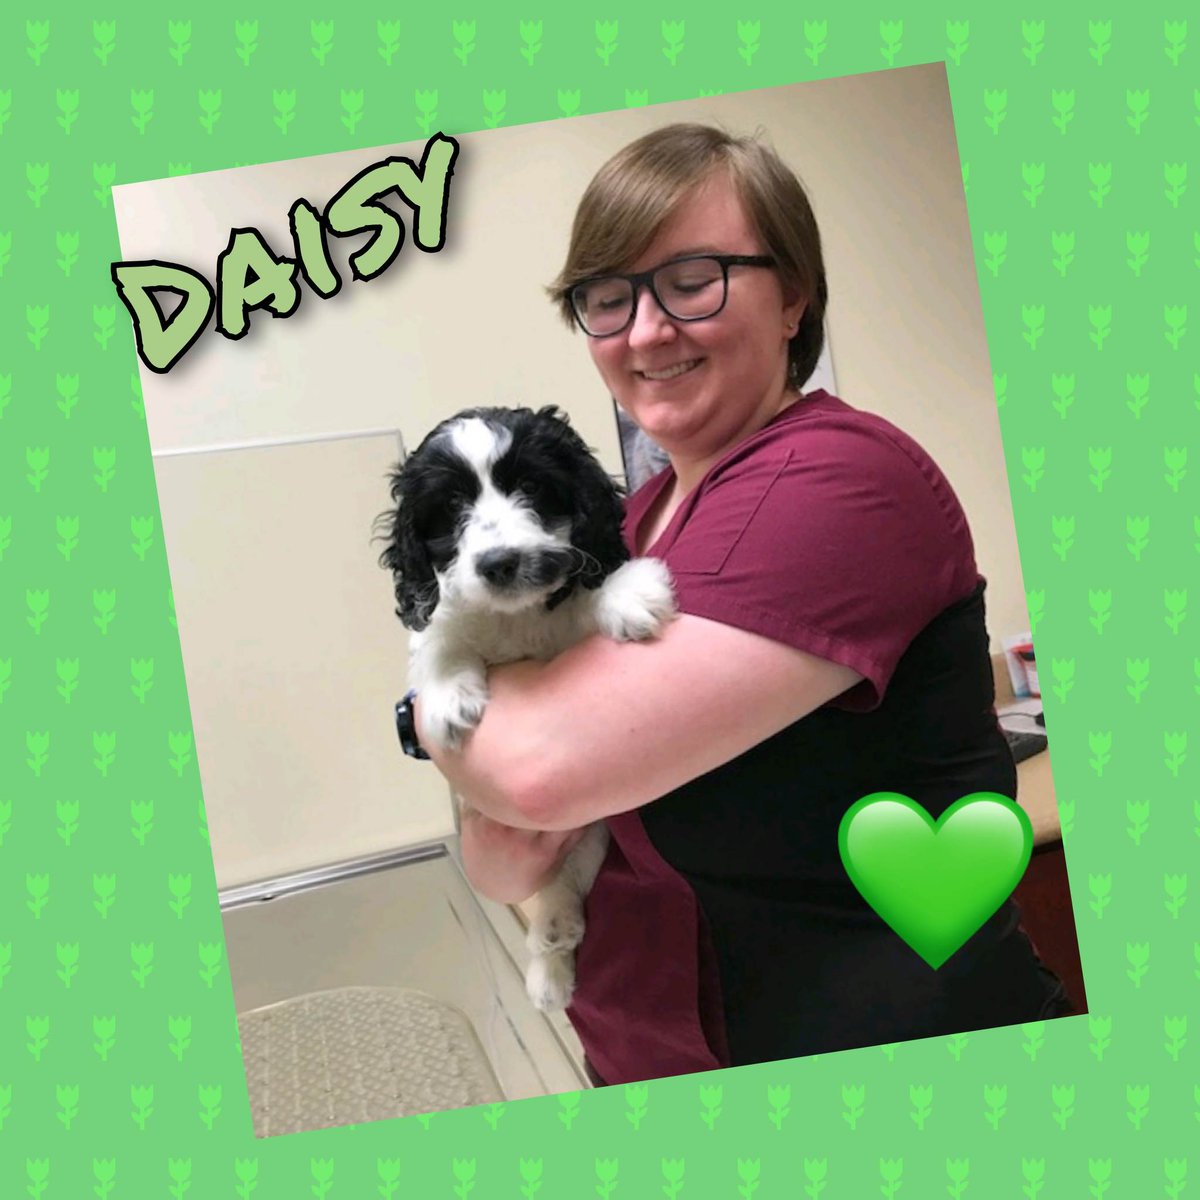 Meet Daisy!
#Petoftheday #kingston #ontario #24hrhospital #afterhoursvet #veterinarycare #petcare #animalhospital #24hour #princessanimalhospital #kingstondowntownanimalhospital